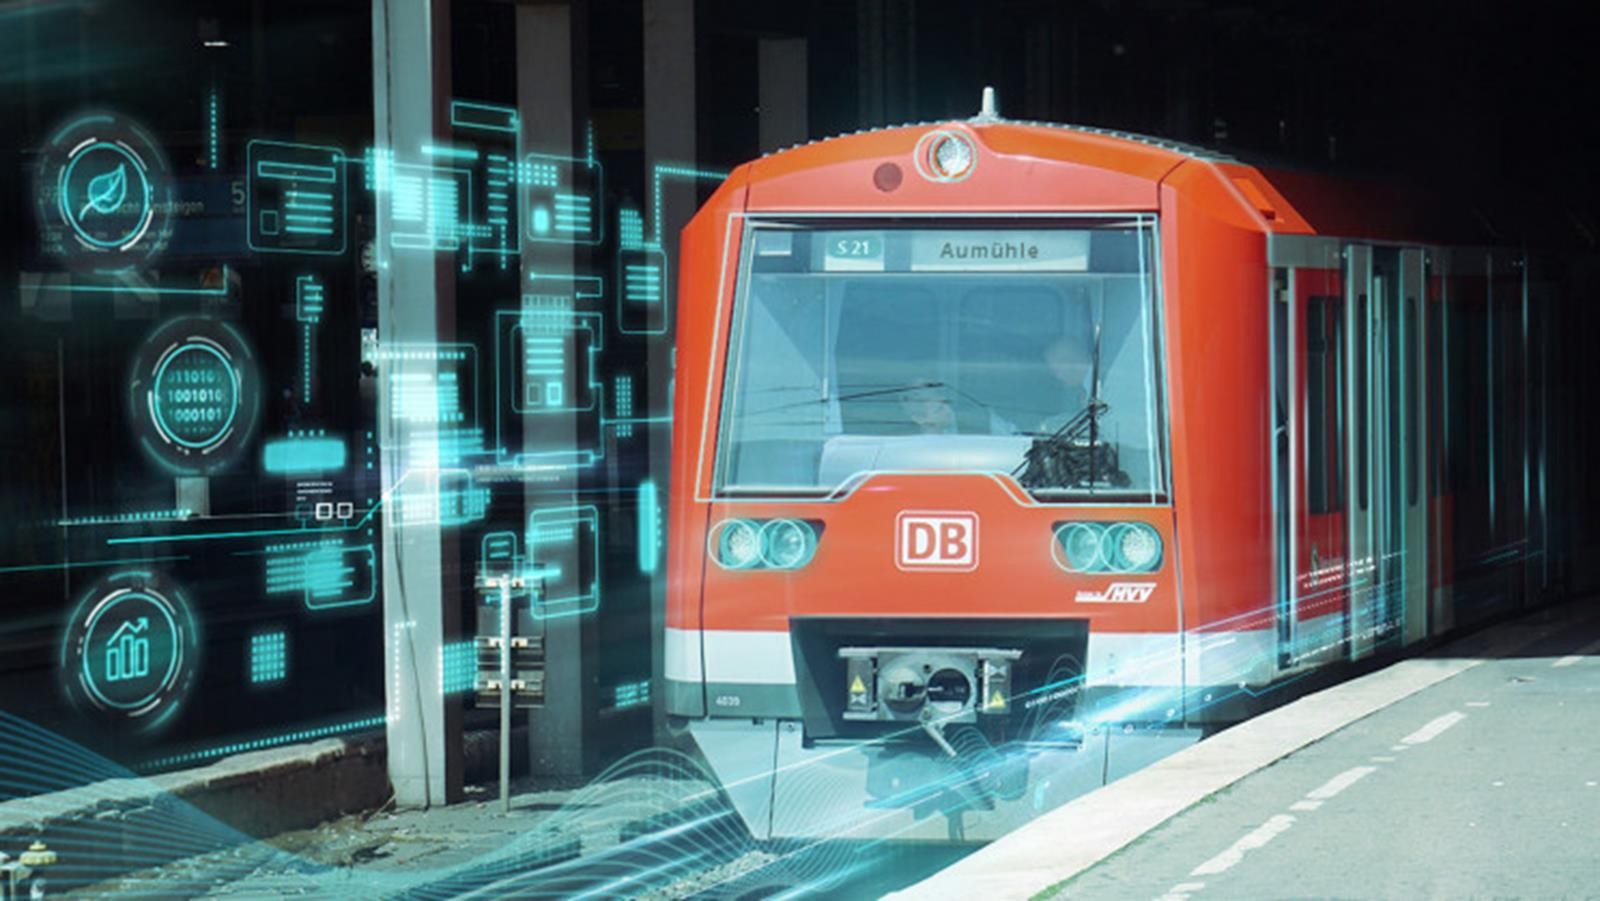 Pierwszy na świecie w pełni automatyczny pociąg ujawniony w Hamburgu, w pełni automatyczny pociąg ujawniony w Hamburgu, w pełni automatyczny pociąg, automatyczny pociąg